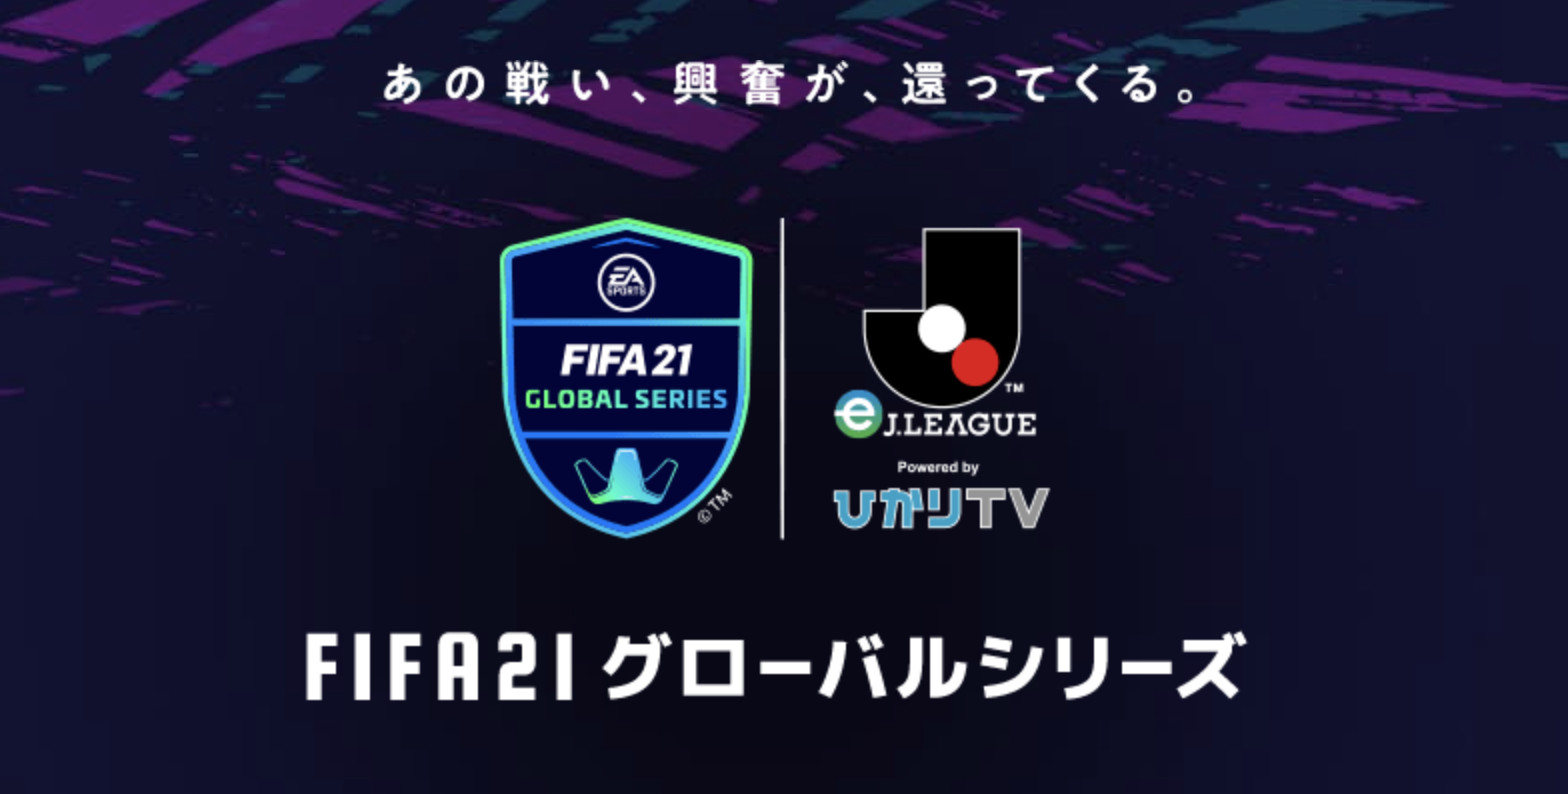 【大会情報】FIFA21 グローバルシリーズ eJリーグ Powered by ひかりTV FUTチャンピオンカップ